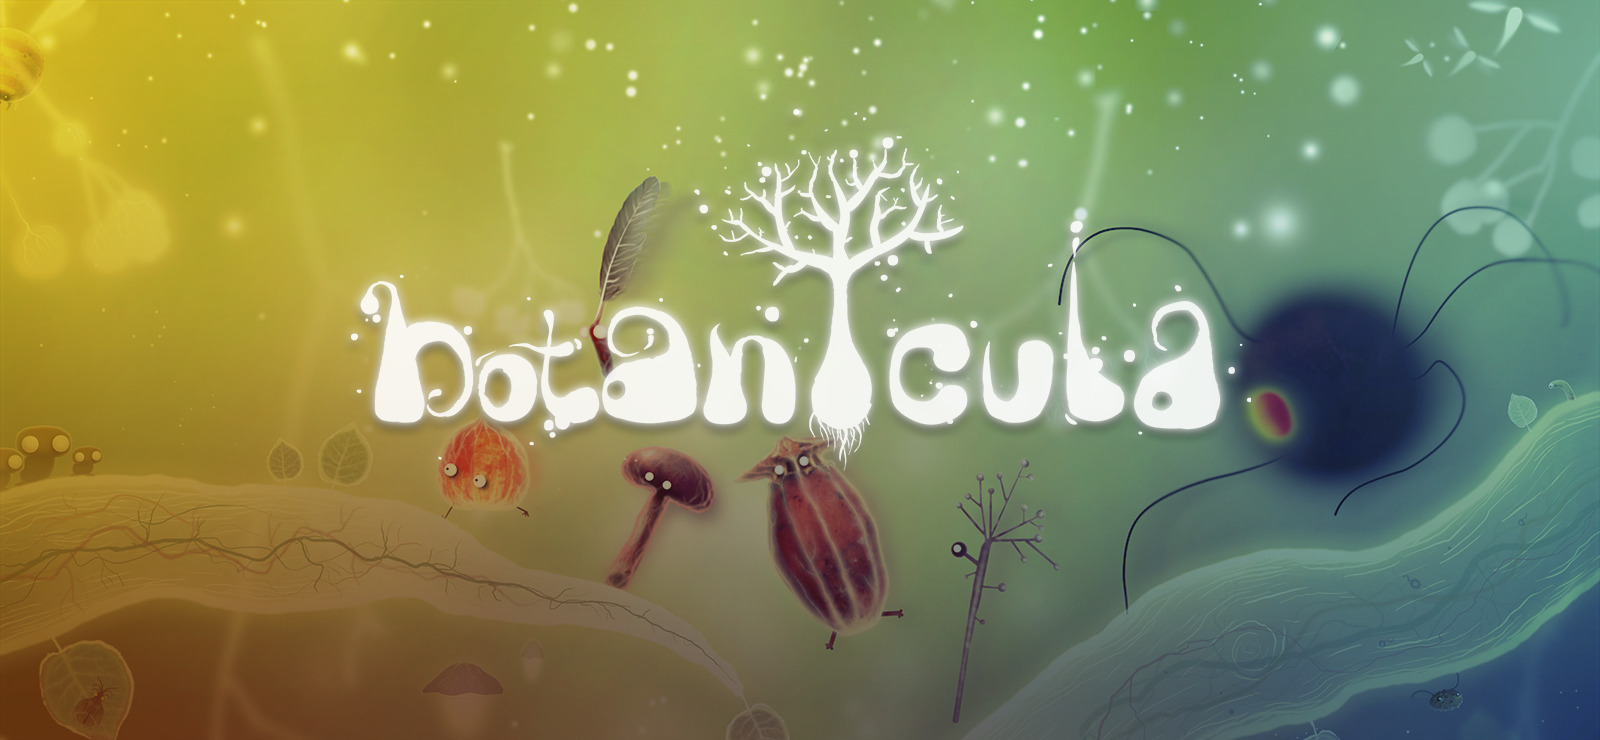 download free botanicula 2